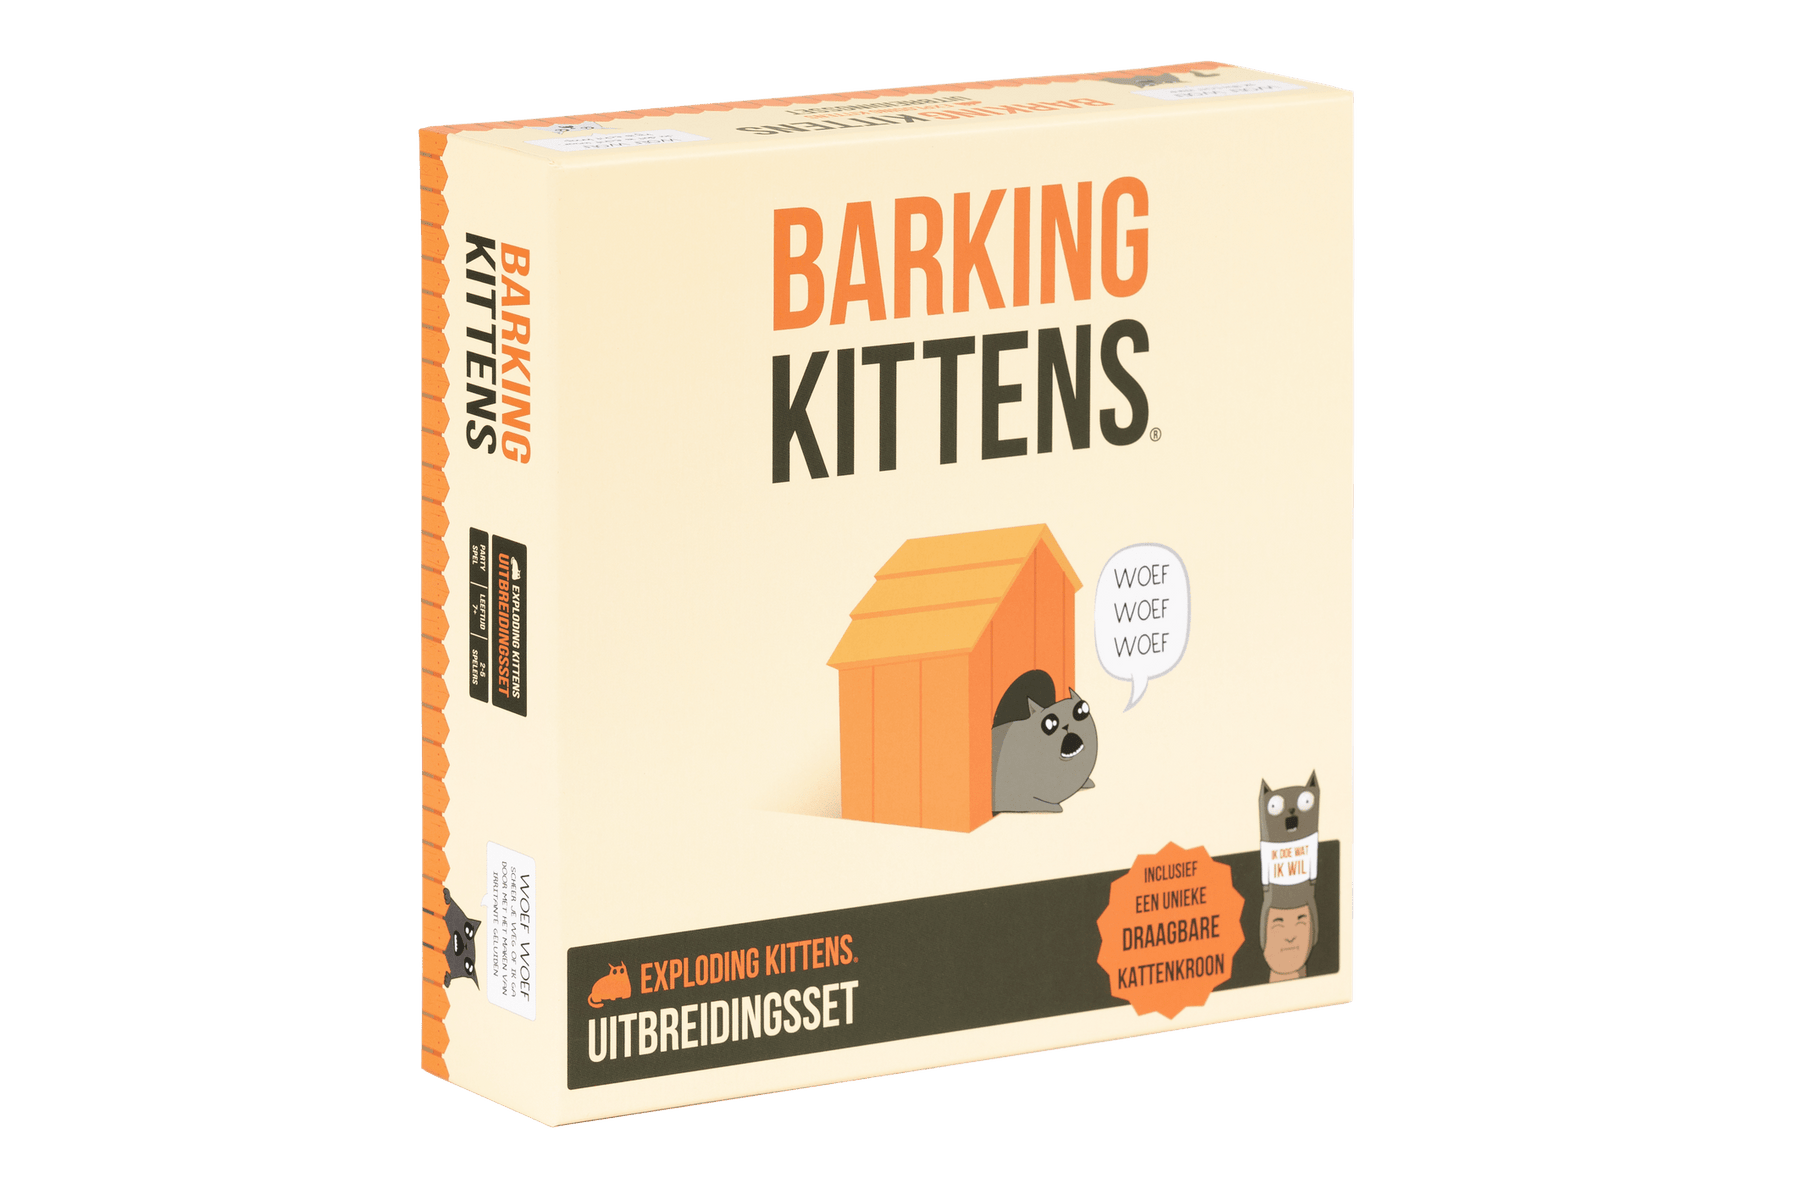 Barking Kittens: Expansion